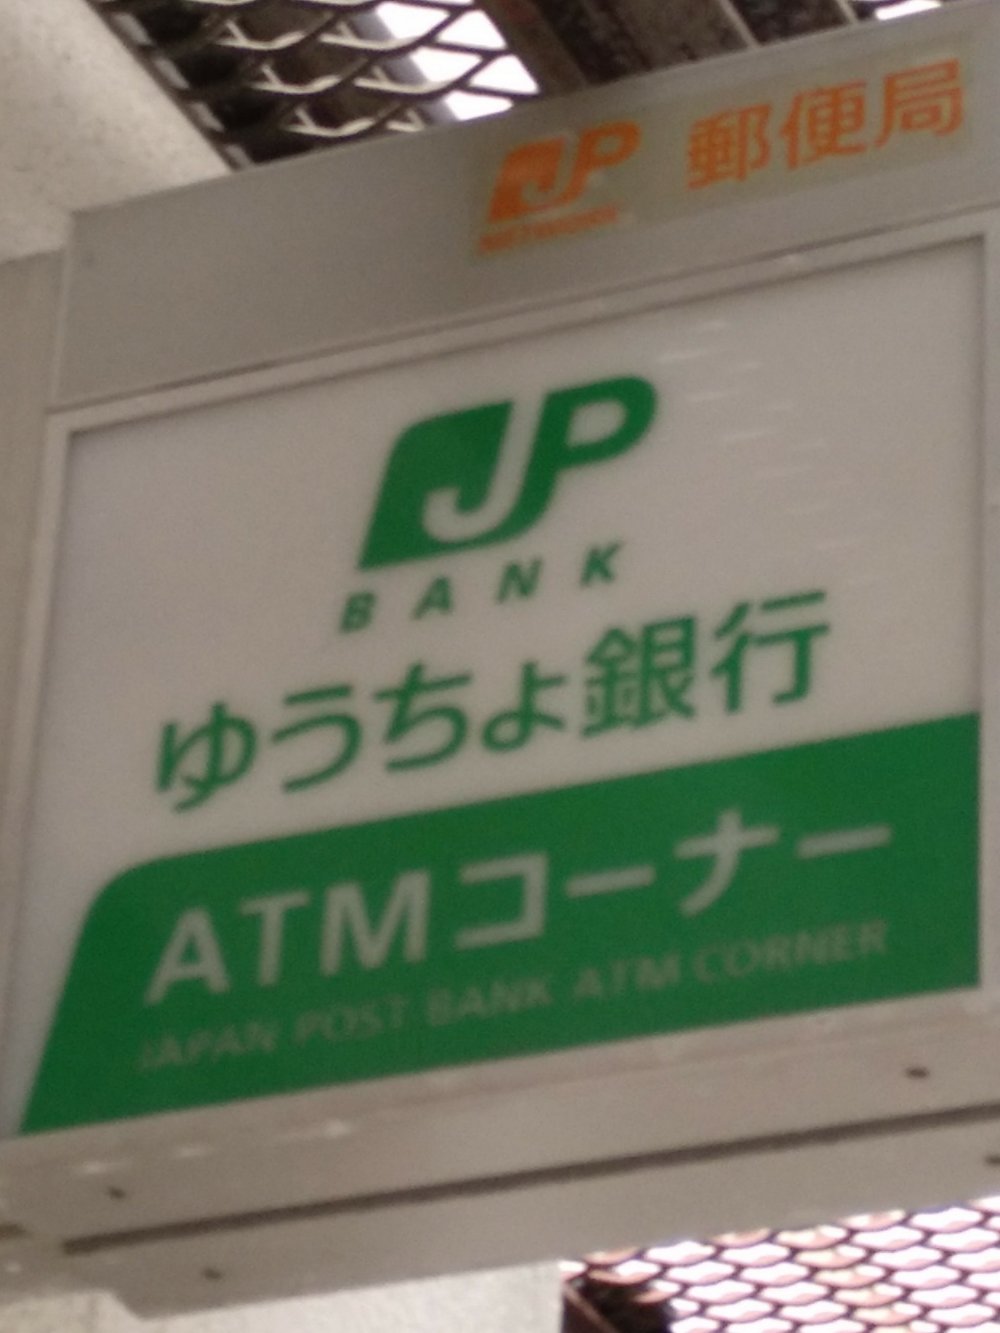 Dirija-se ao Posto de Correios mais próximo e procure esta placa que indica que esse posto possui máquina ATM